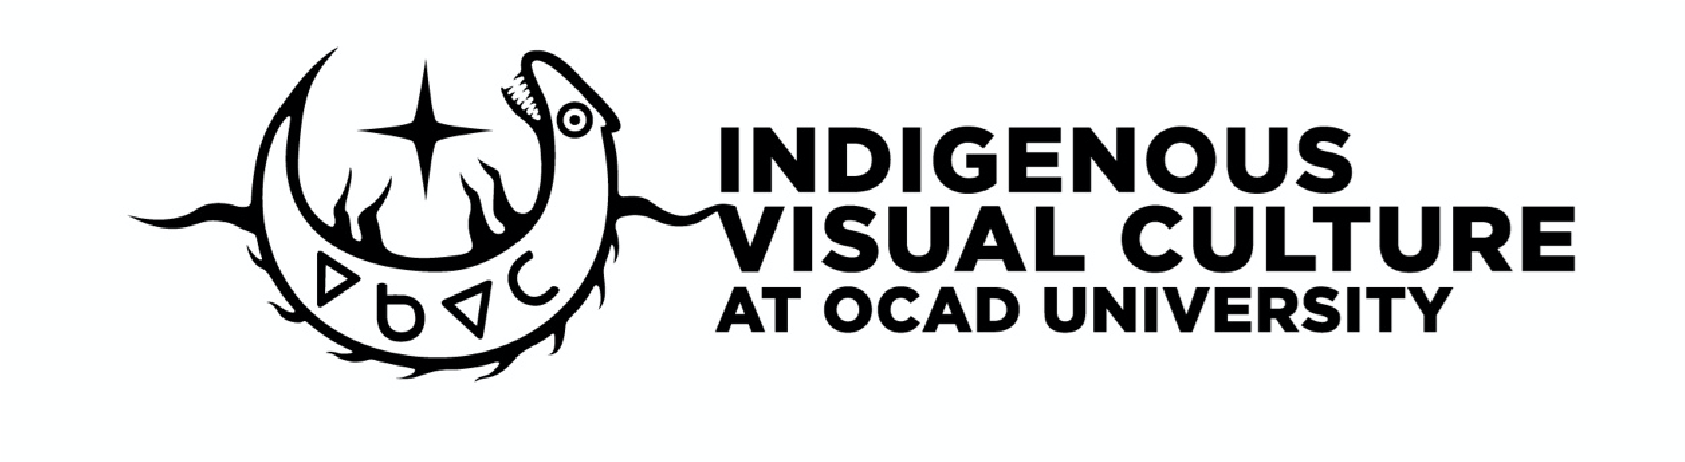 Indigenous Visual Culture at OCAD University 